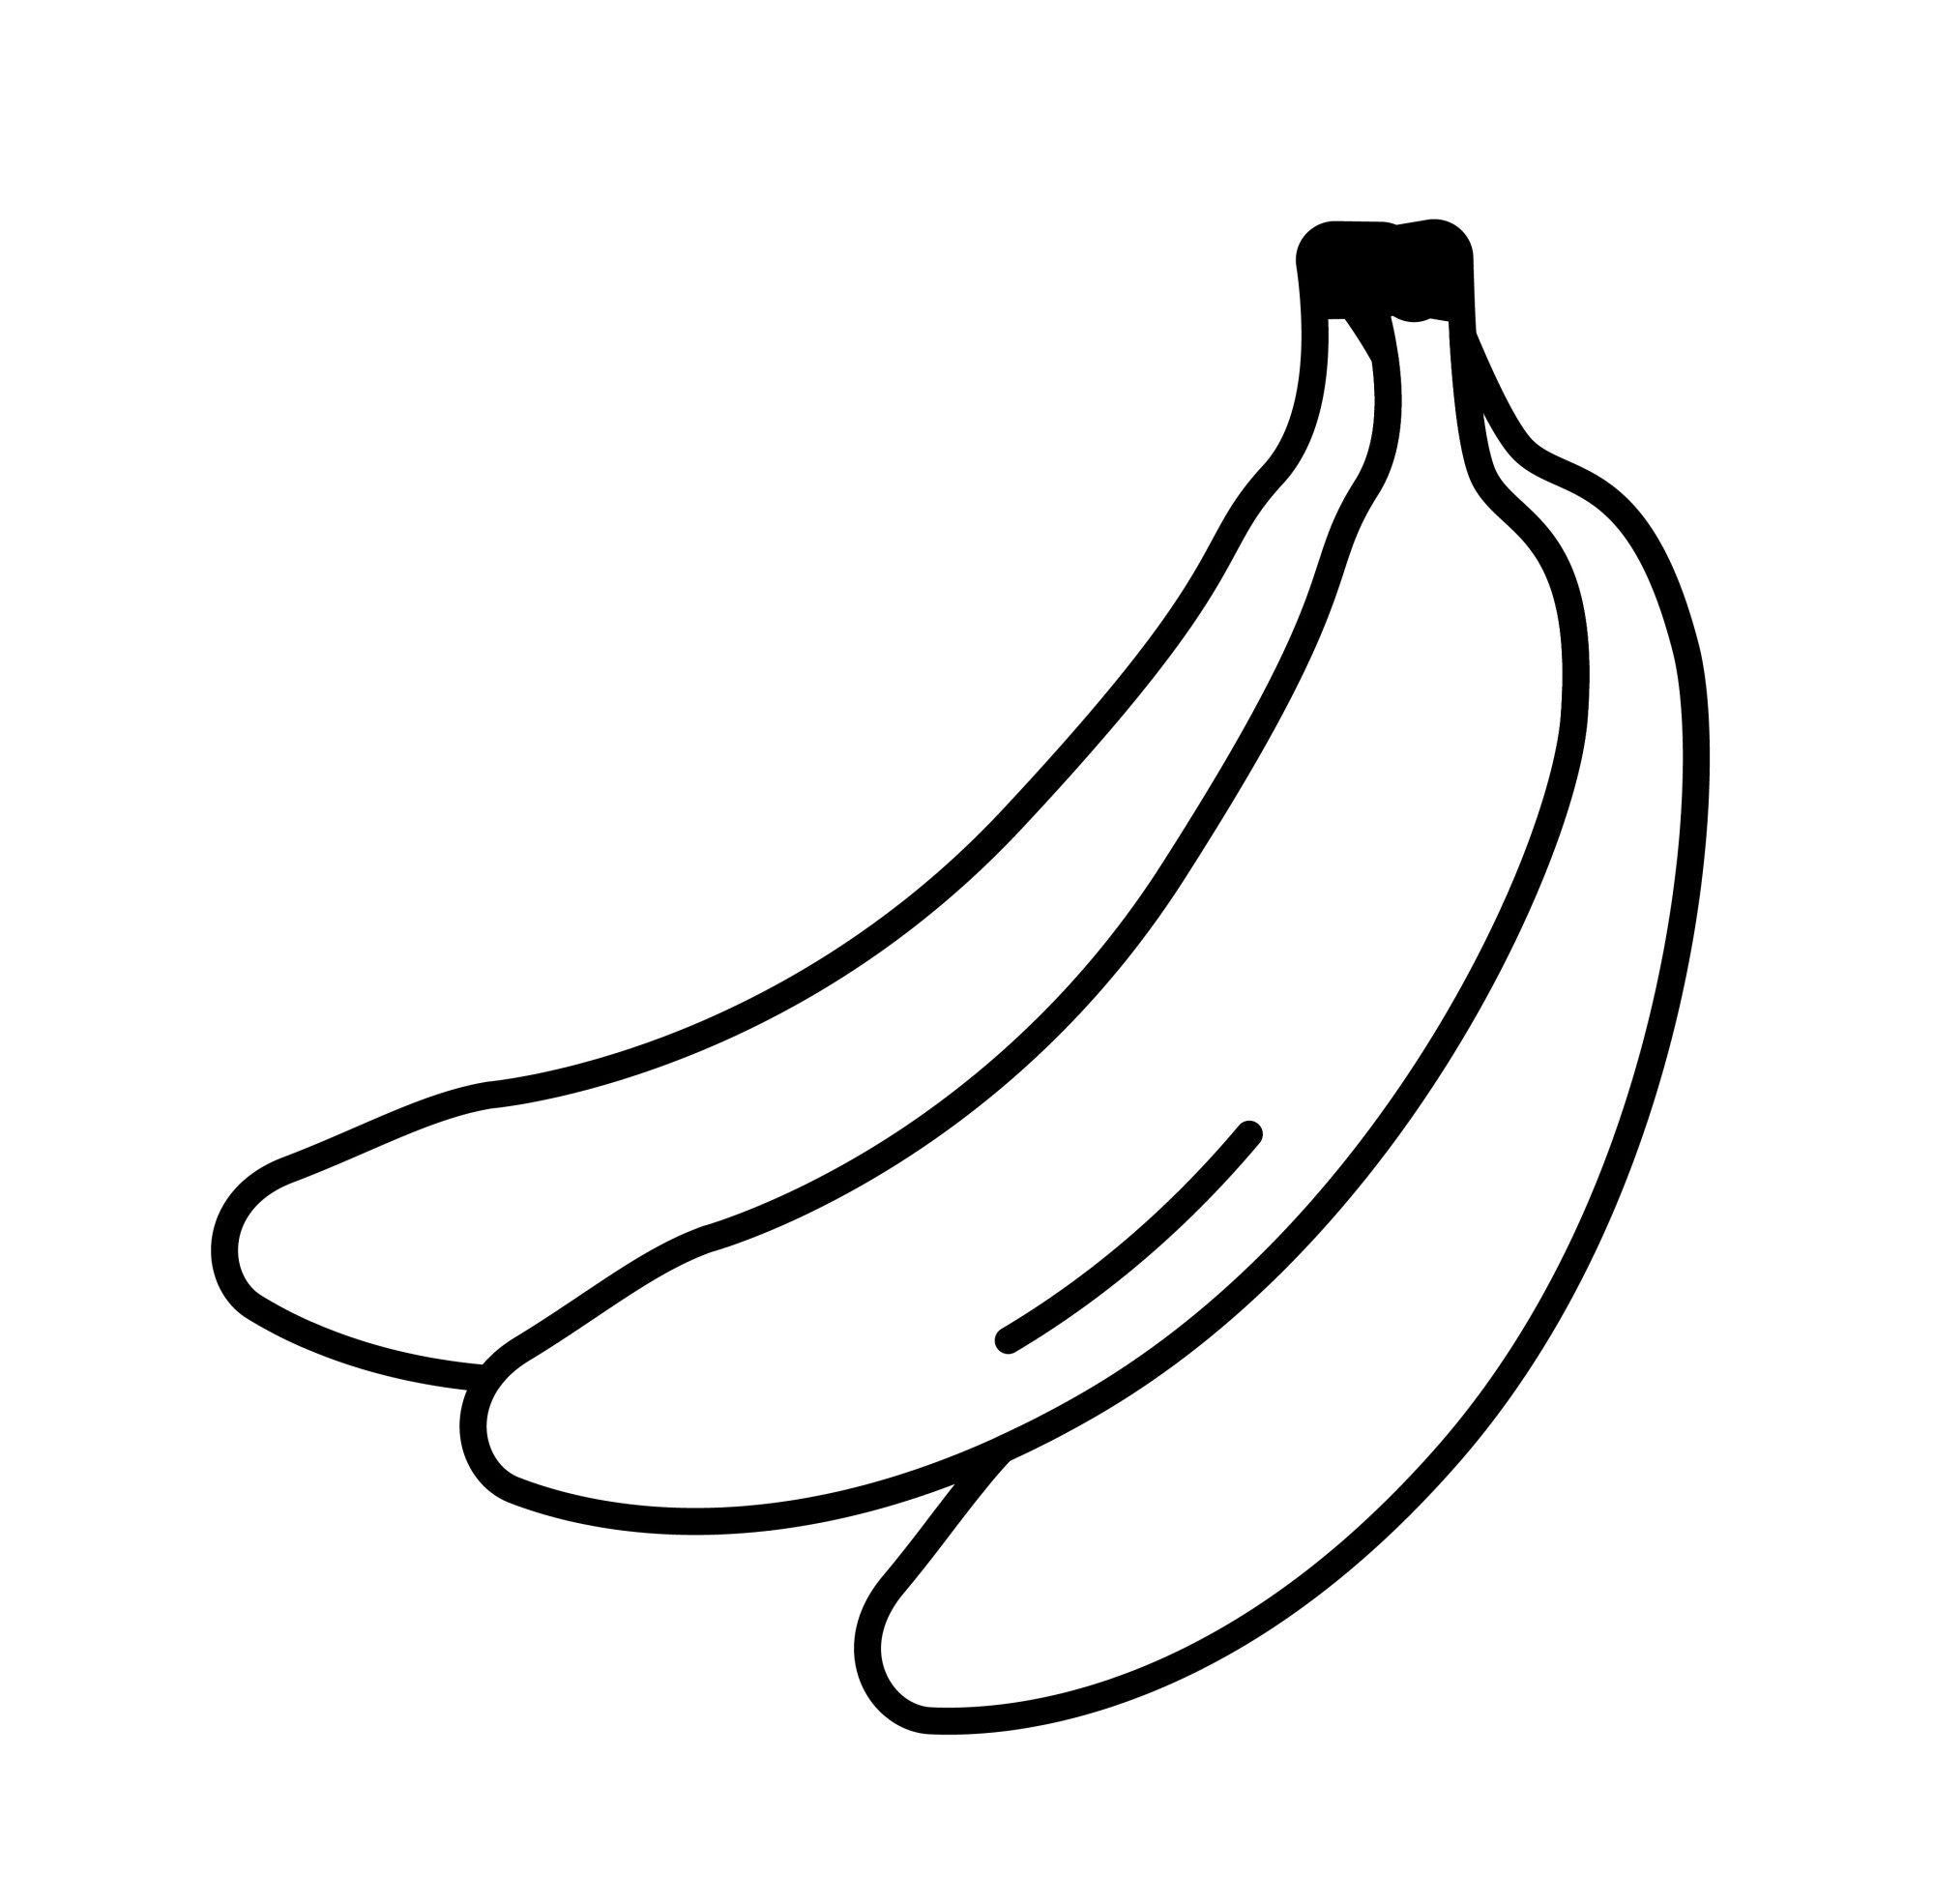 Раскраска для детей: три банана